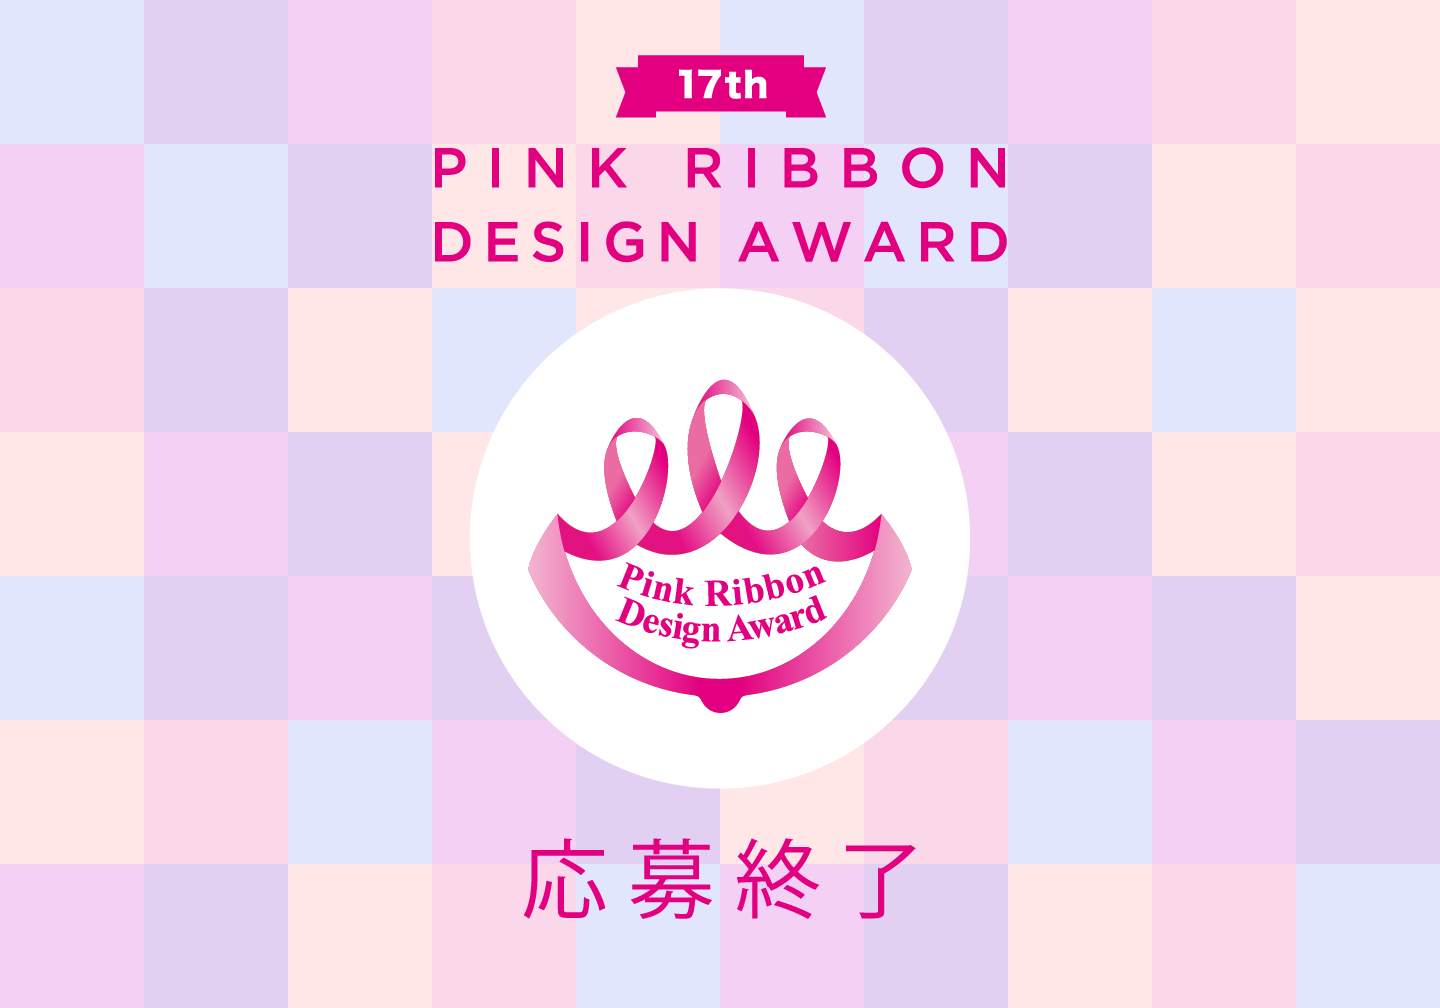 デザイン大賞 ピンクリボンフェスティバル公式サイト